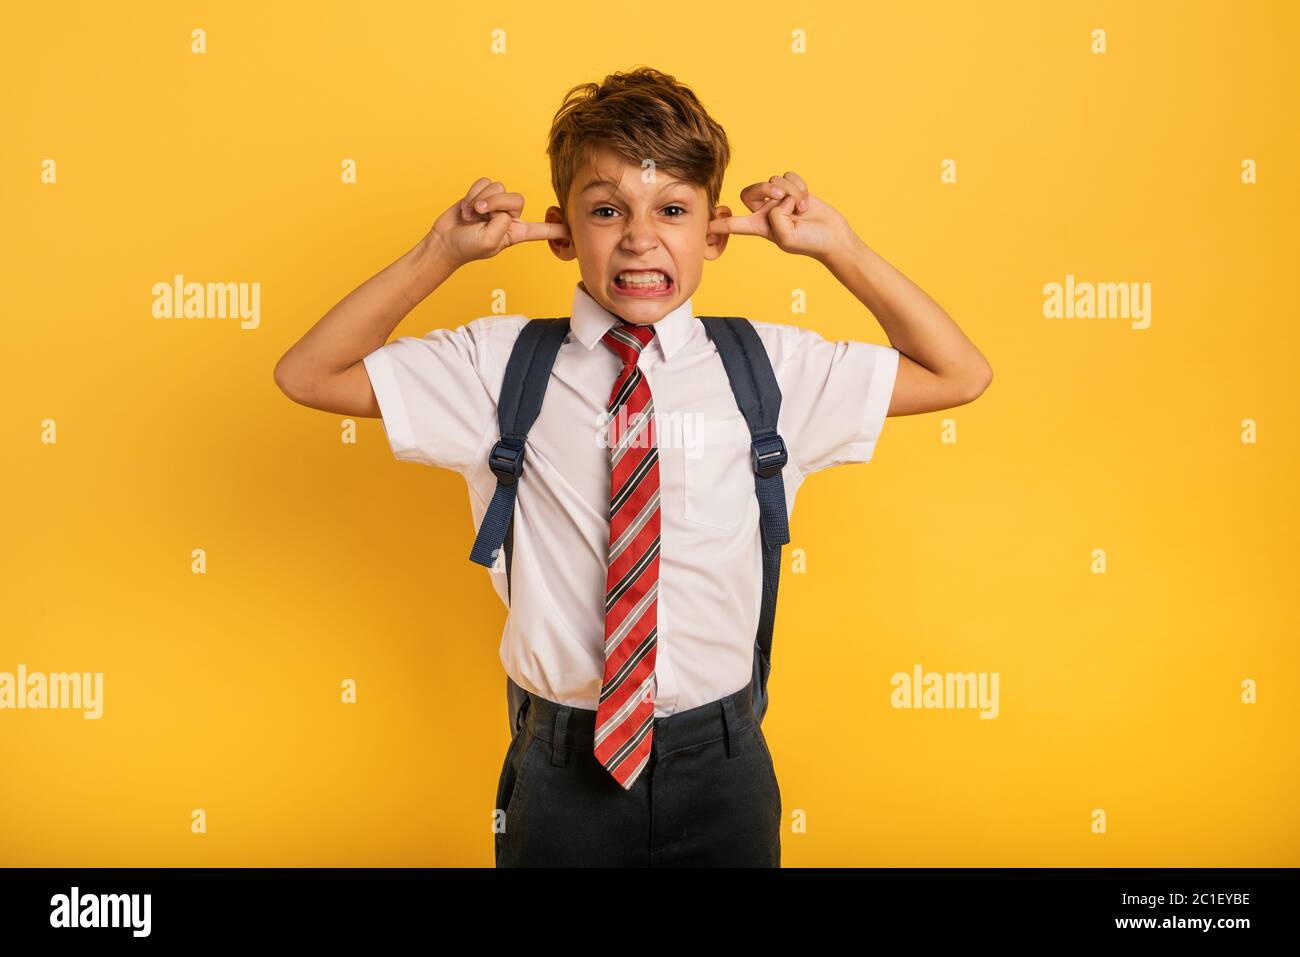 Studente Bambino copre le orecchie perché non vuole sentire il rumore. Sfondo giallo Foto Stock